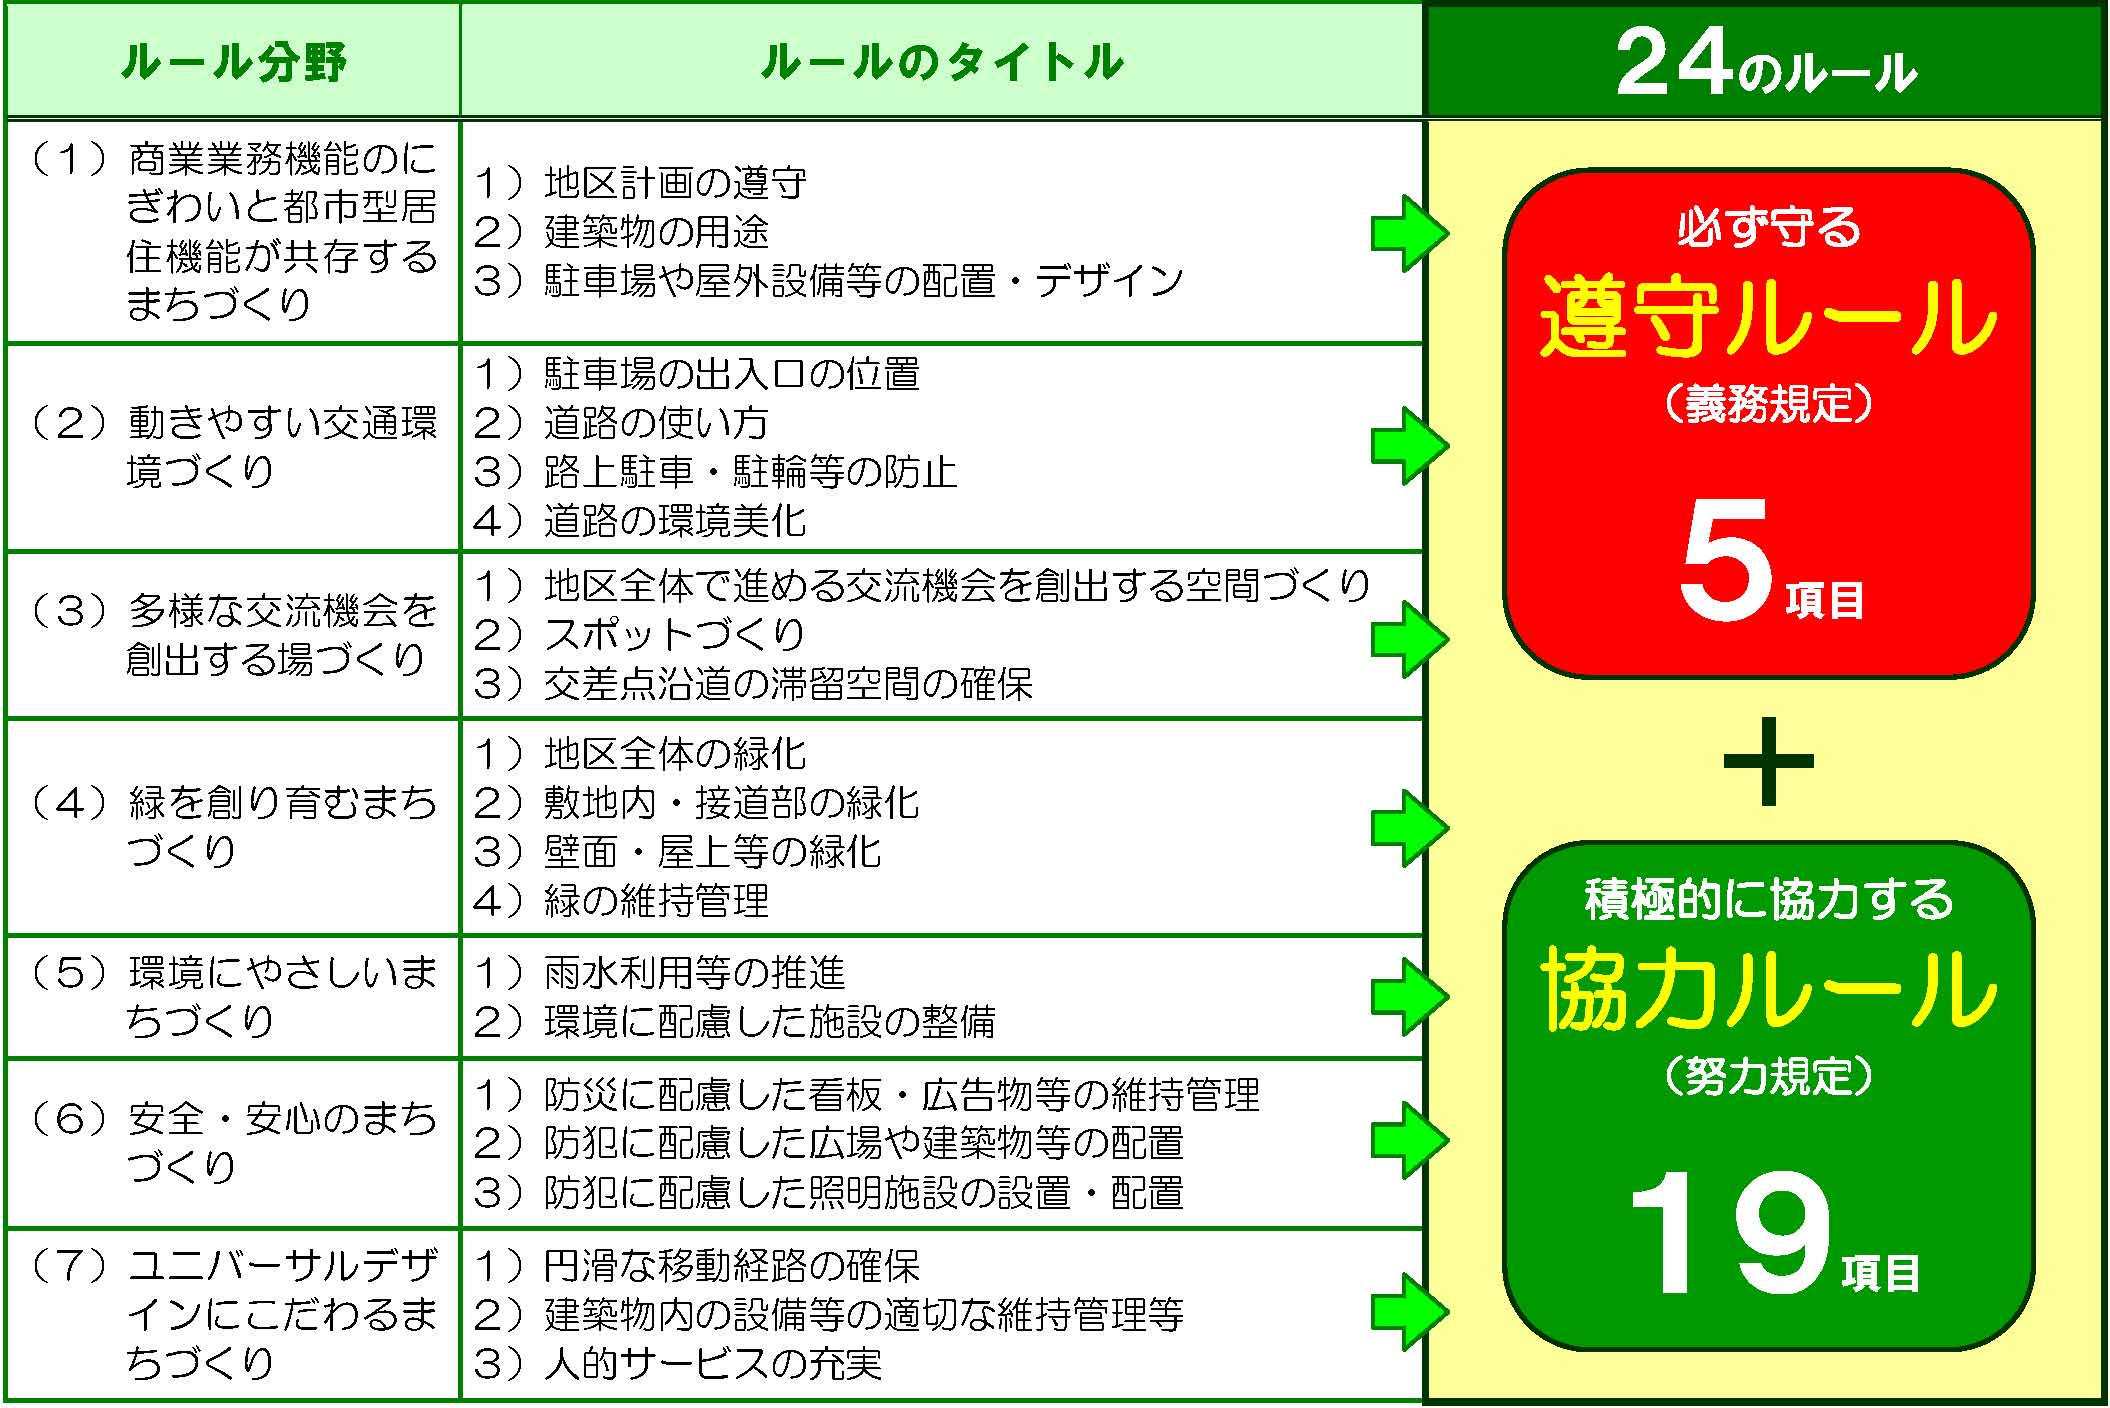 戸田駅西口駅前地区地区まちづくり協定に定めるルールの図表